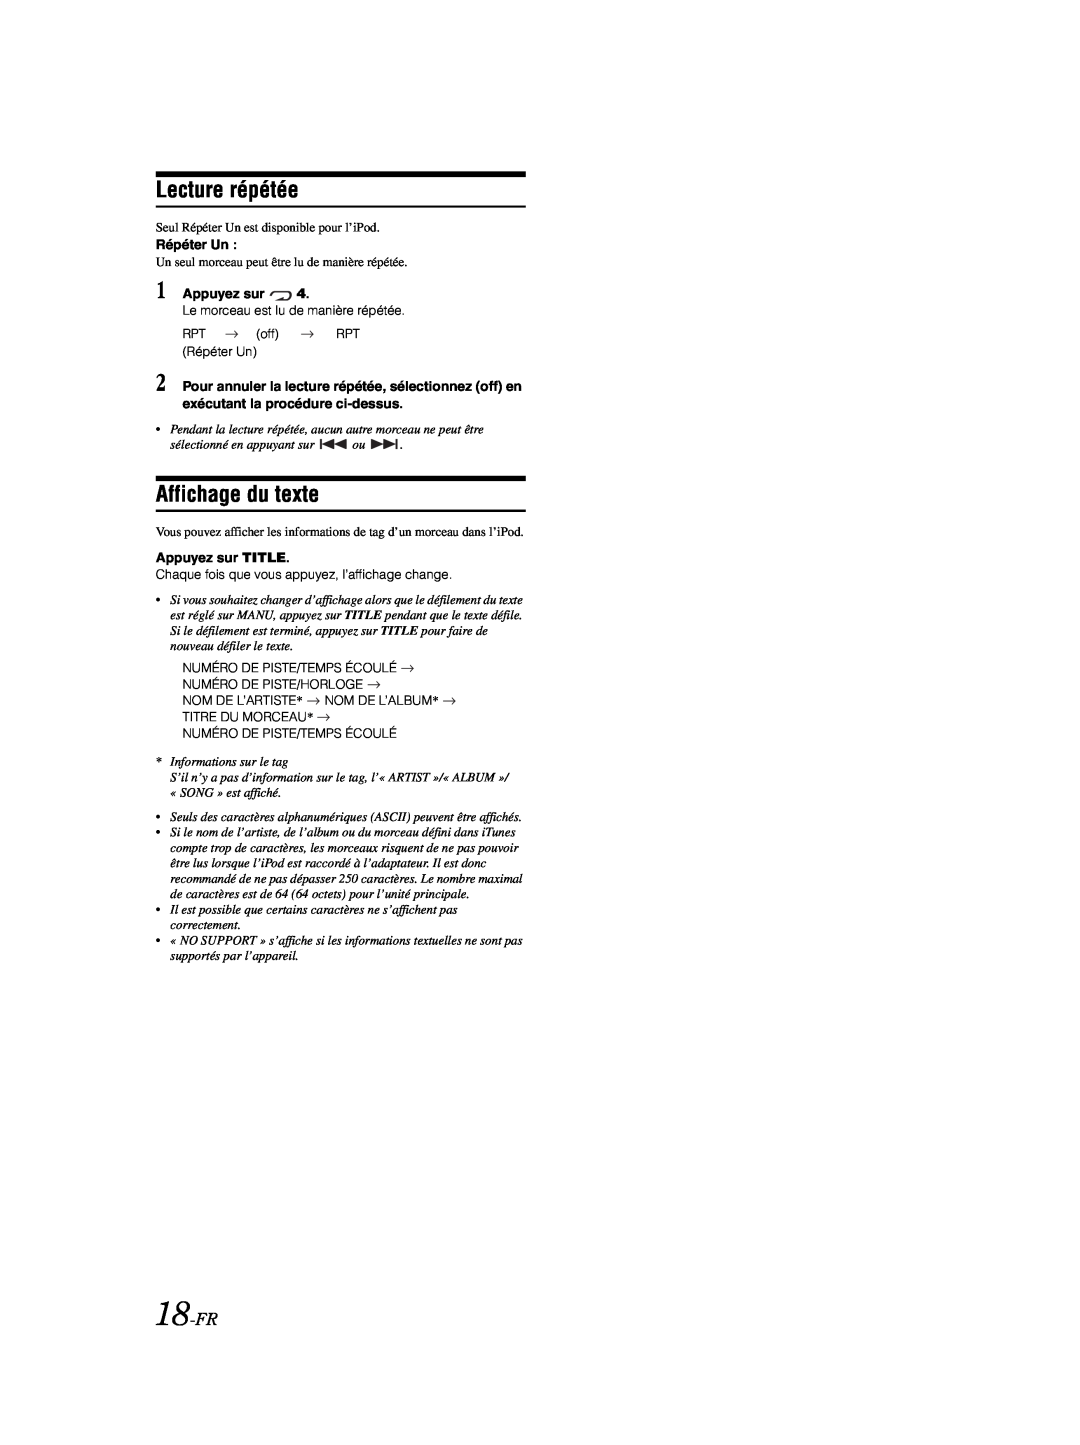 Alpine CDE-9870 owner manual 18-FR, Lecture répétée, Affichage du texte, Répéter Un, Appuyez sur TITLE 